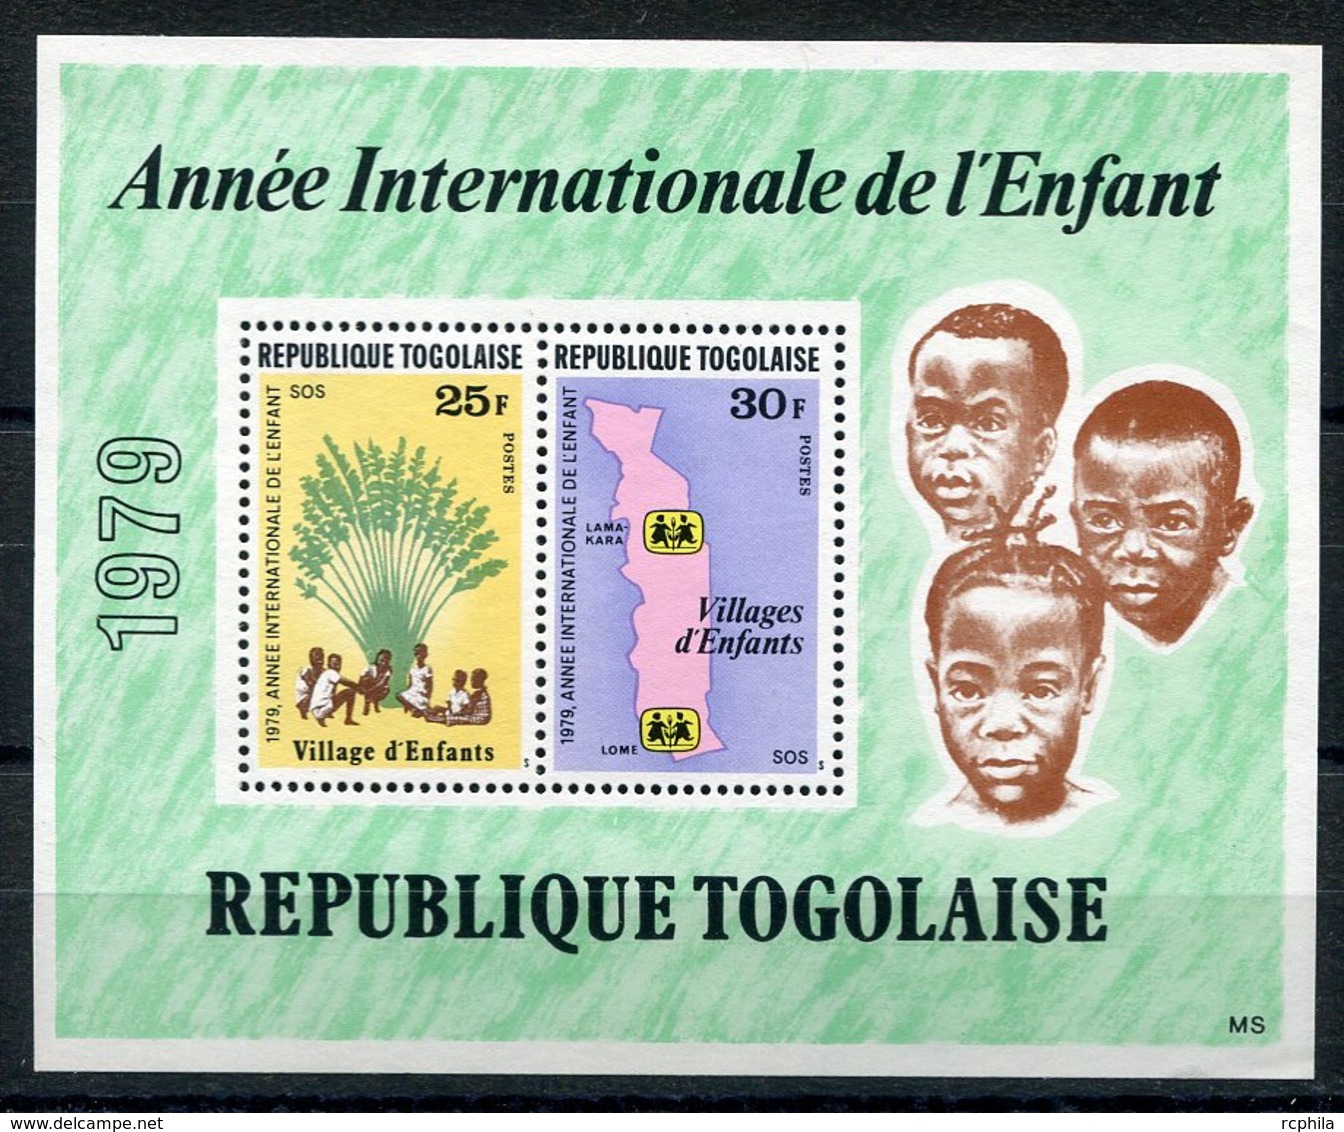 RC 15126 TOGO ANNÉE INTERNATIONALE DE L'ENFANT BLOC FEUILLET NEUF ** MNH TB - Togo (1960-...)